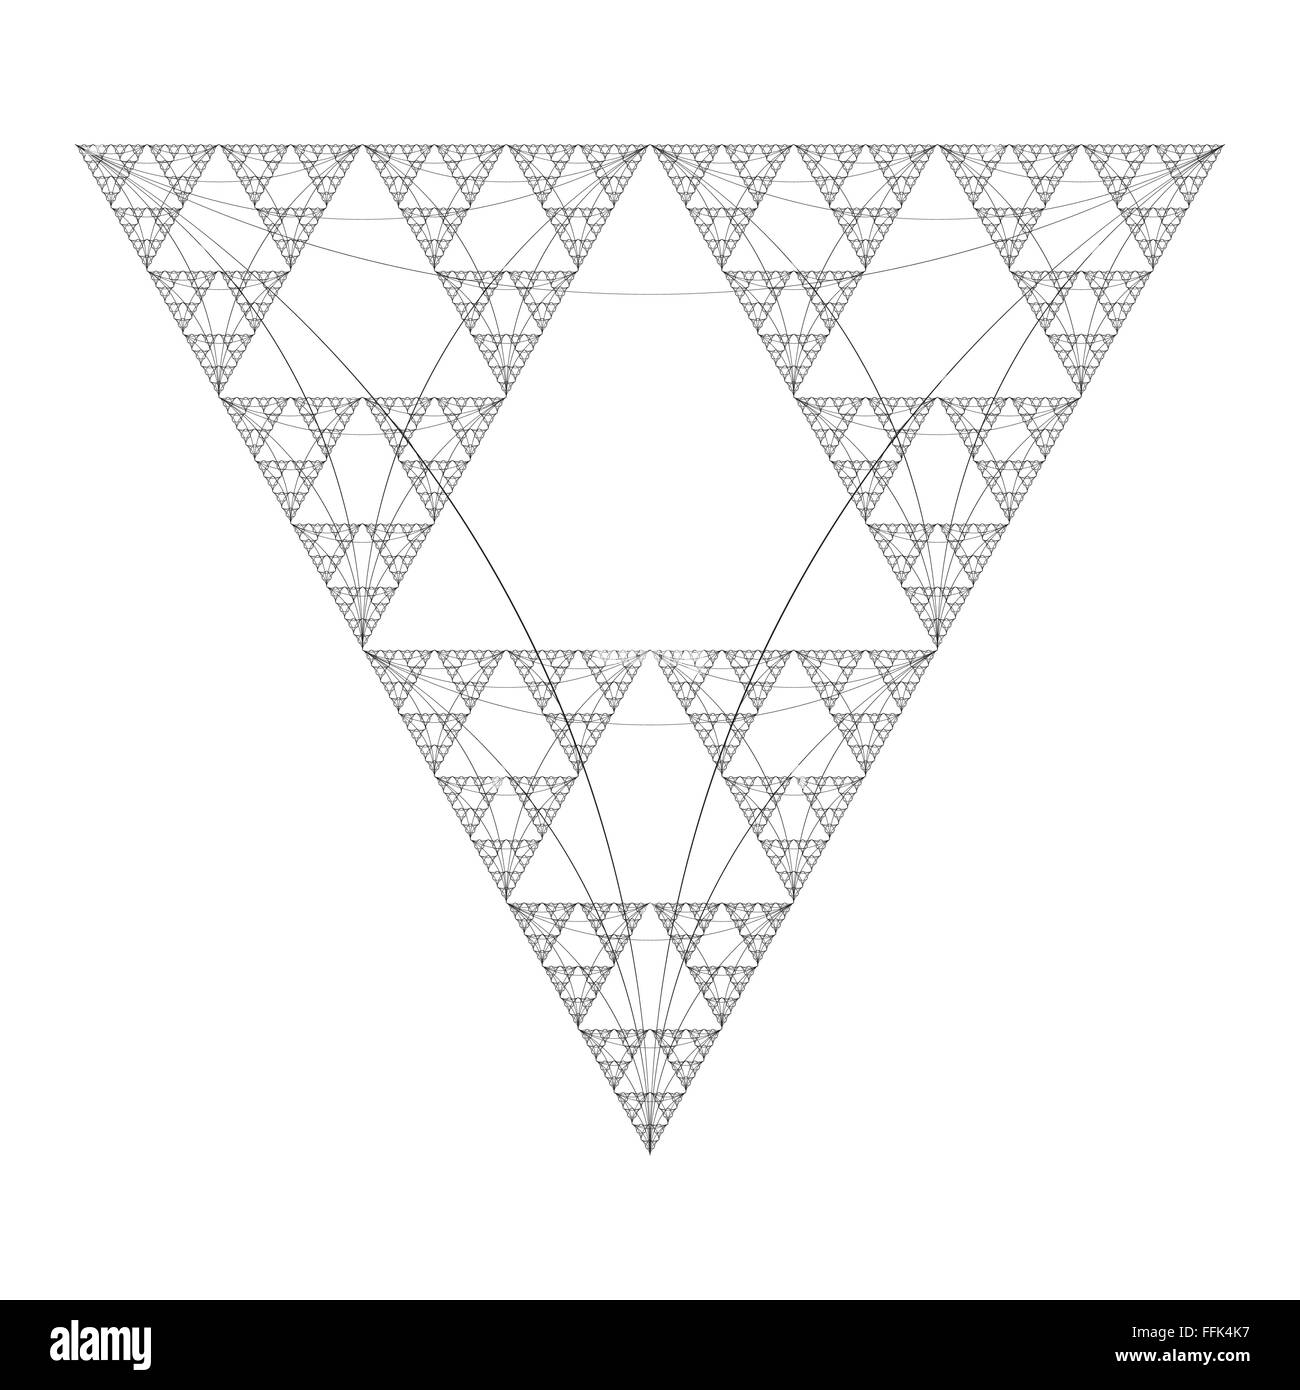 Couleur noir vecteur géométrie sacrée triangle décoration résumé fractale illustration isolé sur fond blanc Illustration de Vecteur